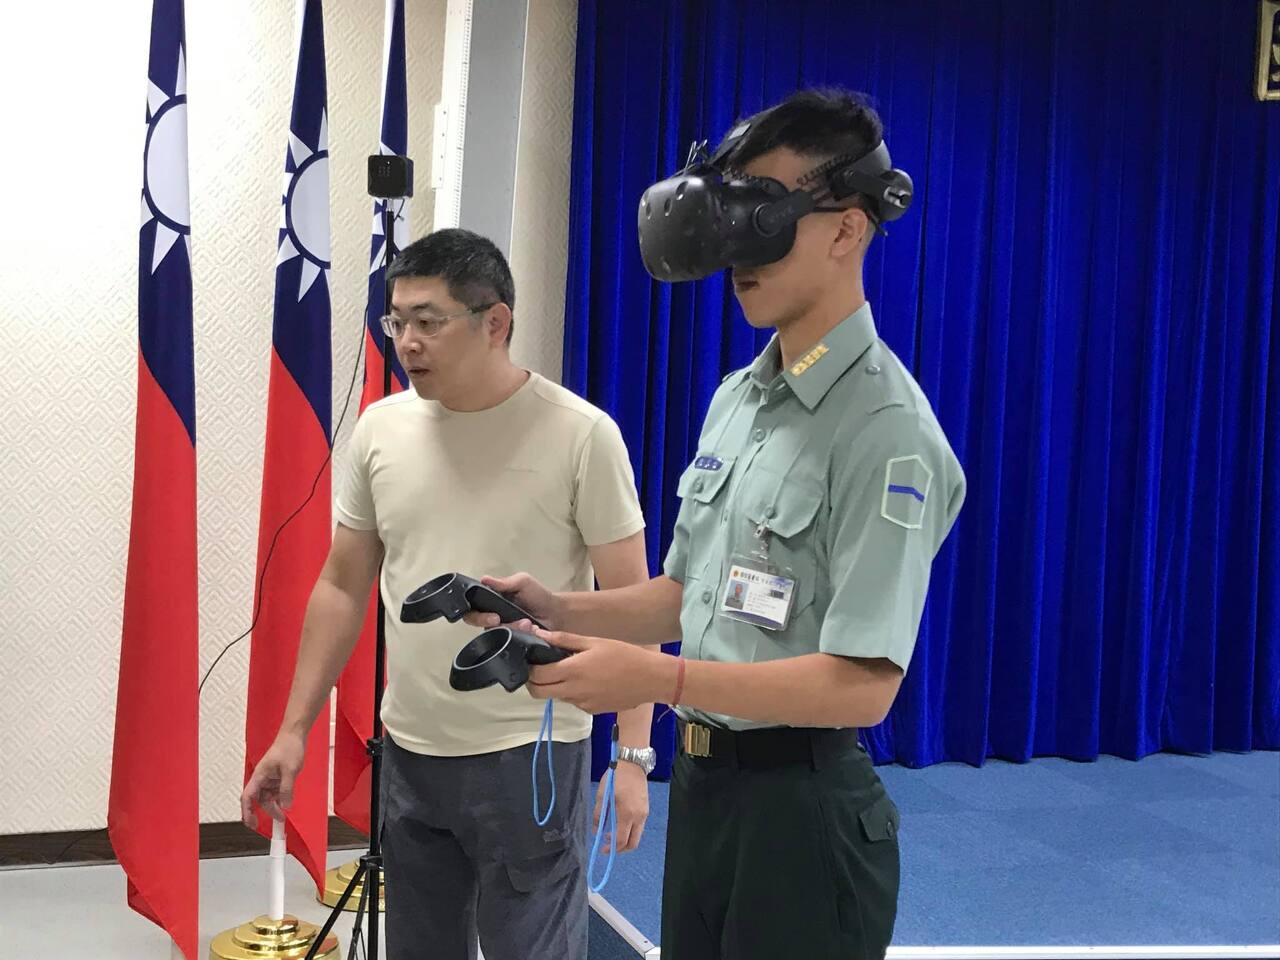 La réalité virtuelle pour former des médecins à des situations de graves accidents